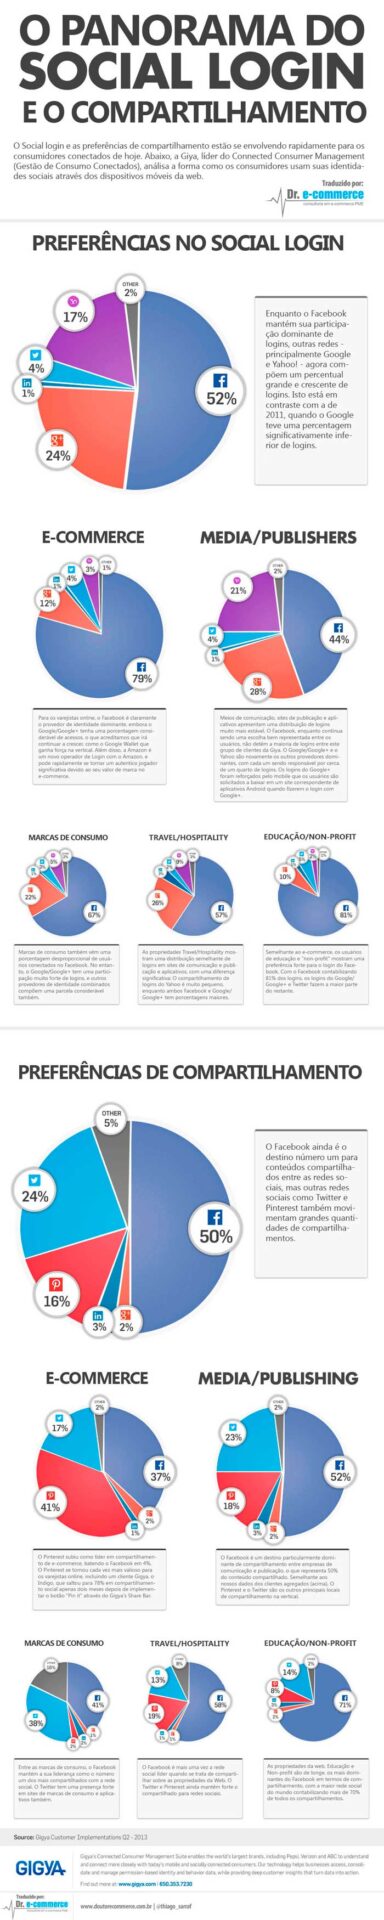 Infográfico: O Panorama do Social Login e o Compartilhamento